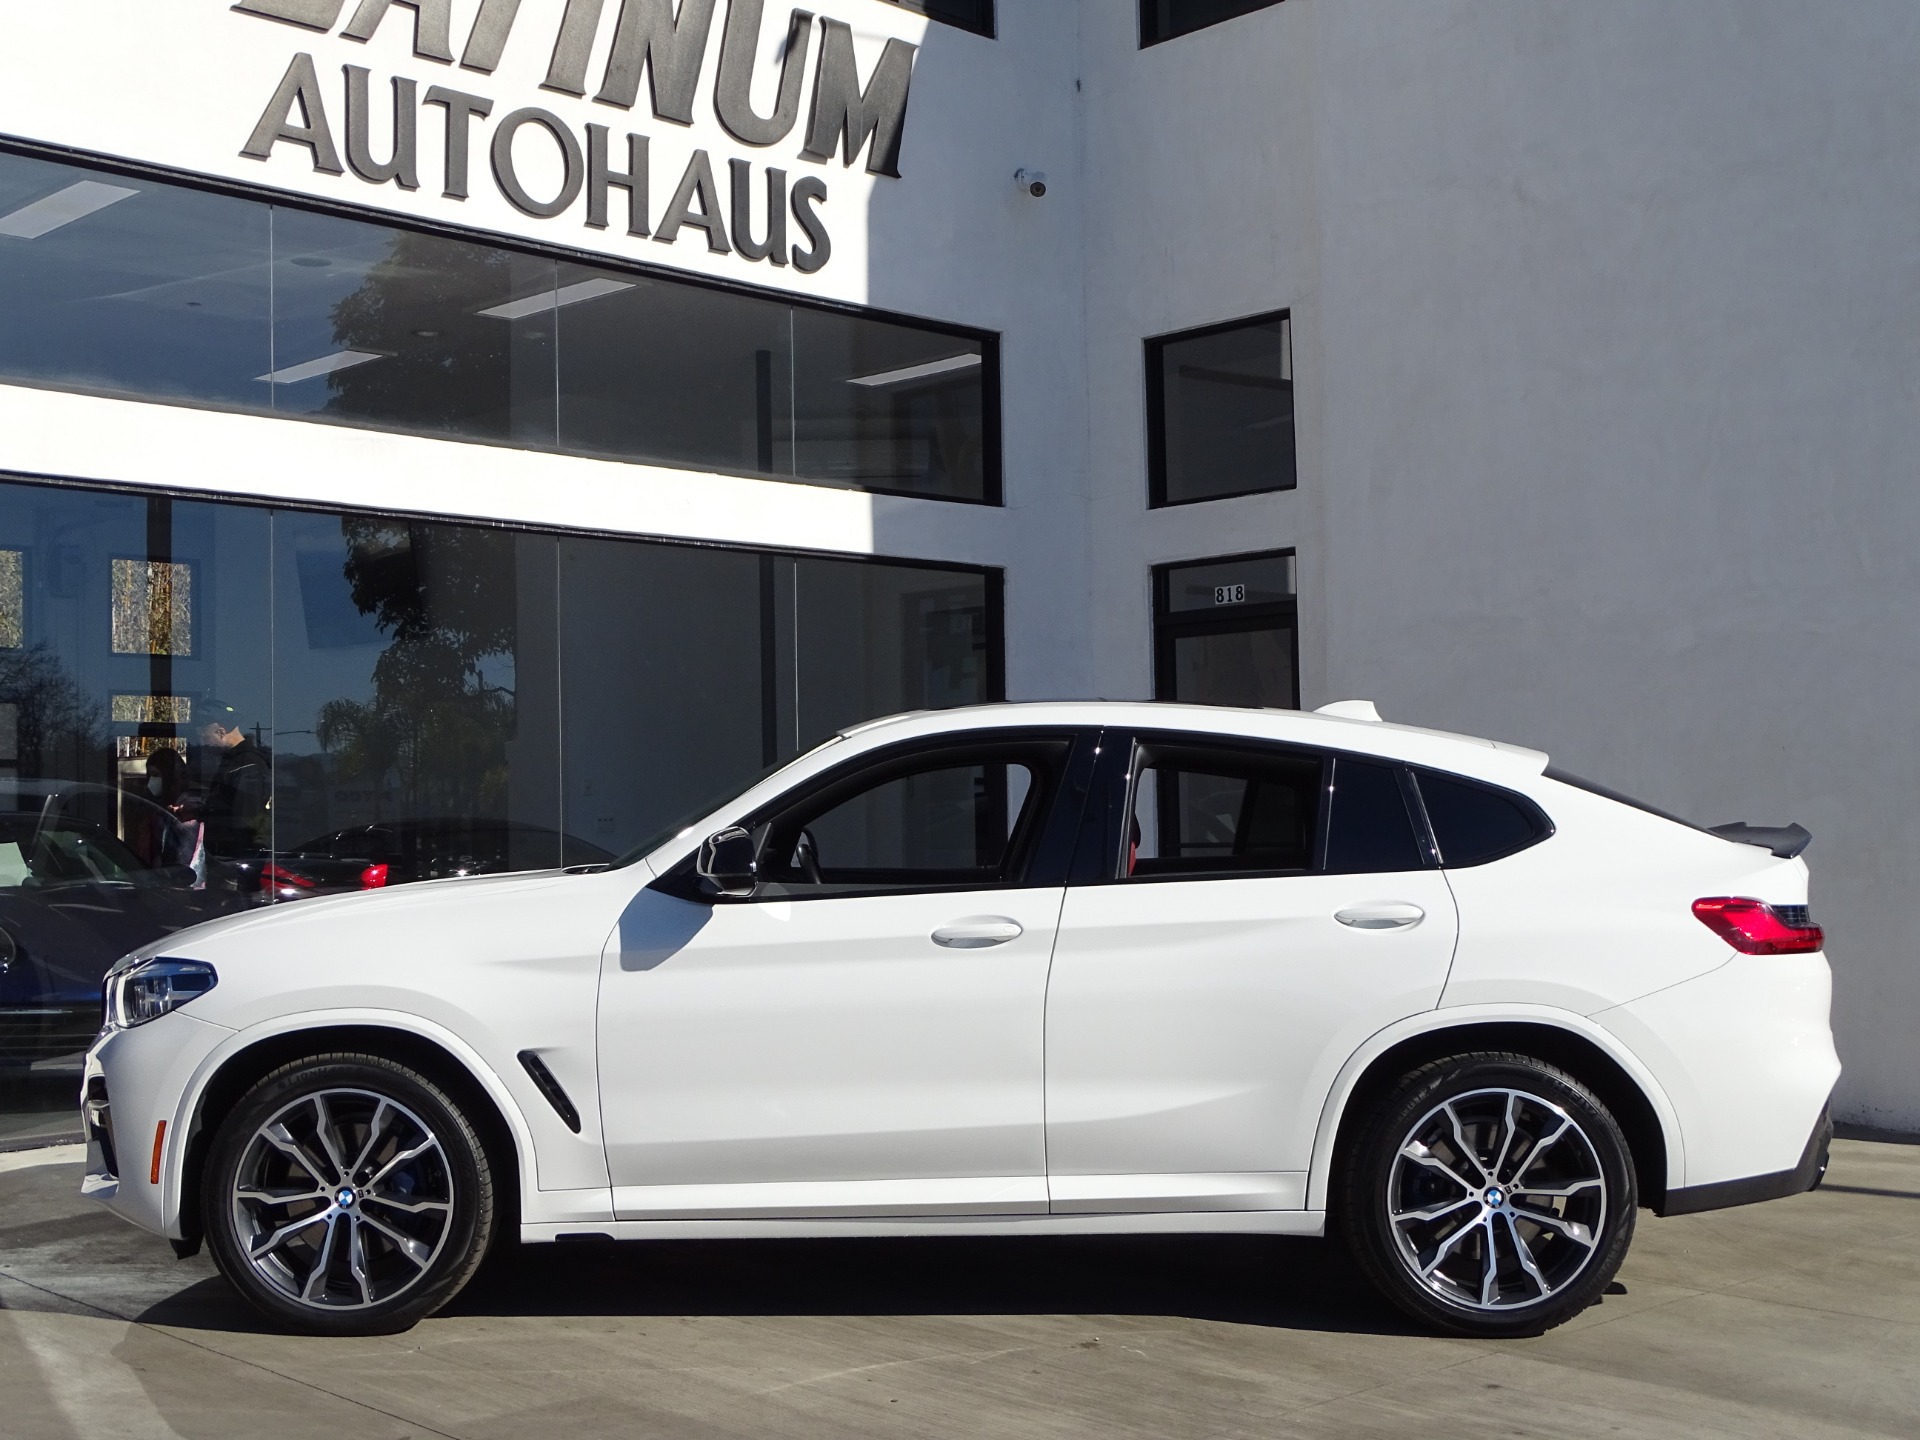 2019 BMW X4 M40i Stock # 7214 for sale near Redondo Beach, CA | CA BMW  Dealer